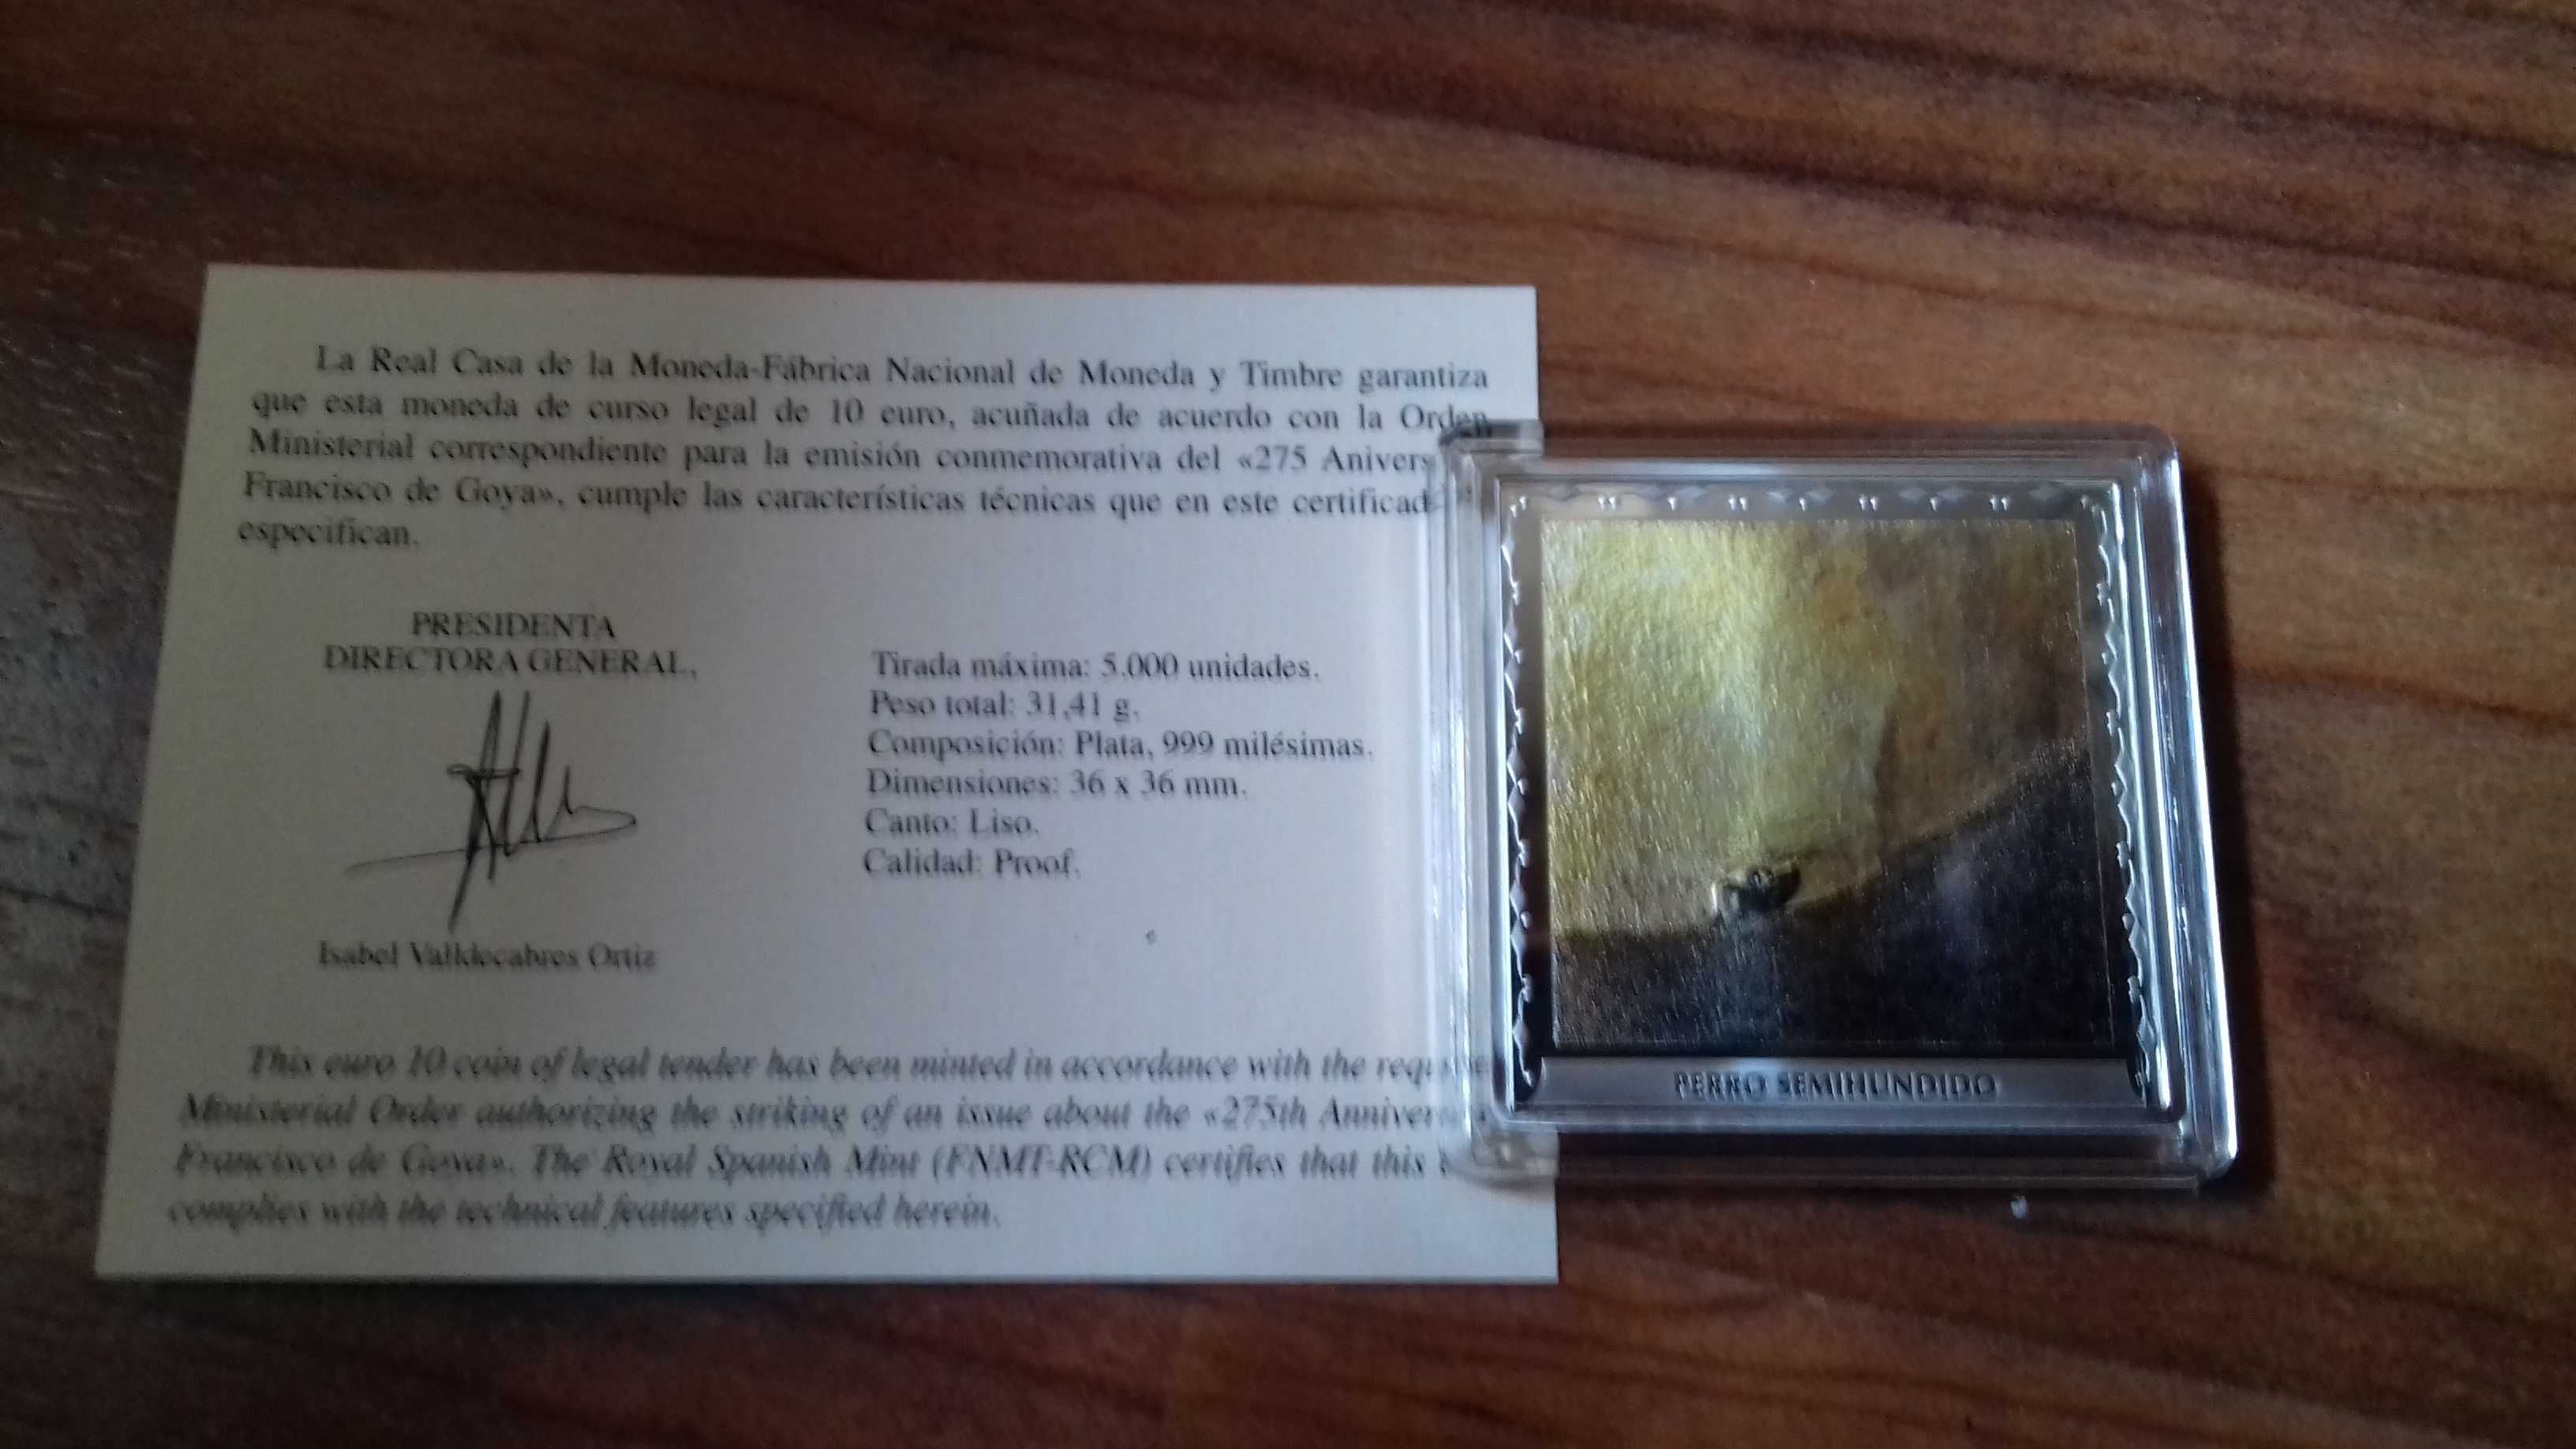 Moeda 10€ Espanha - Goya "Perro Semihundido" (5000 Exemplares)